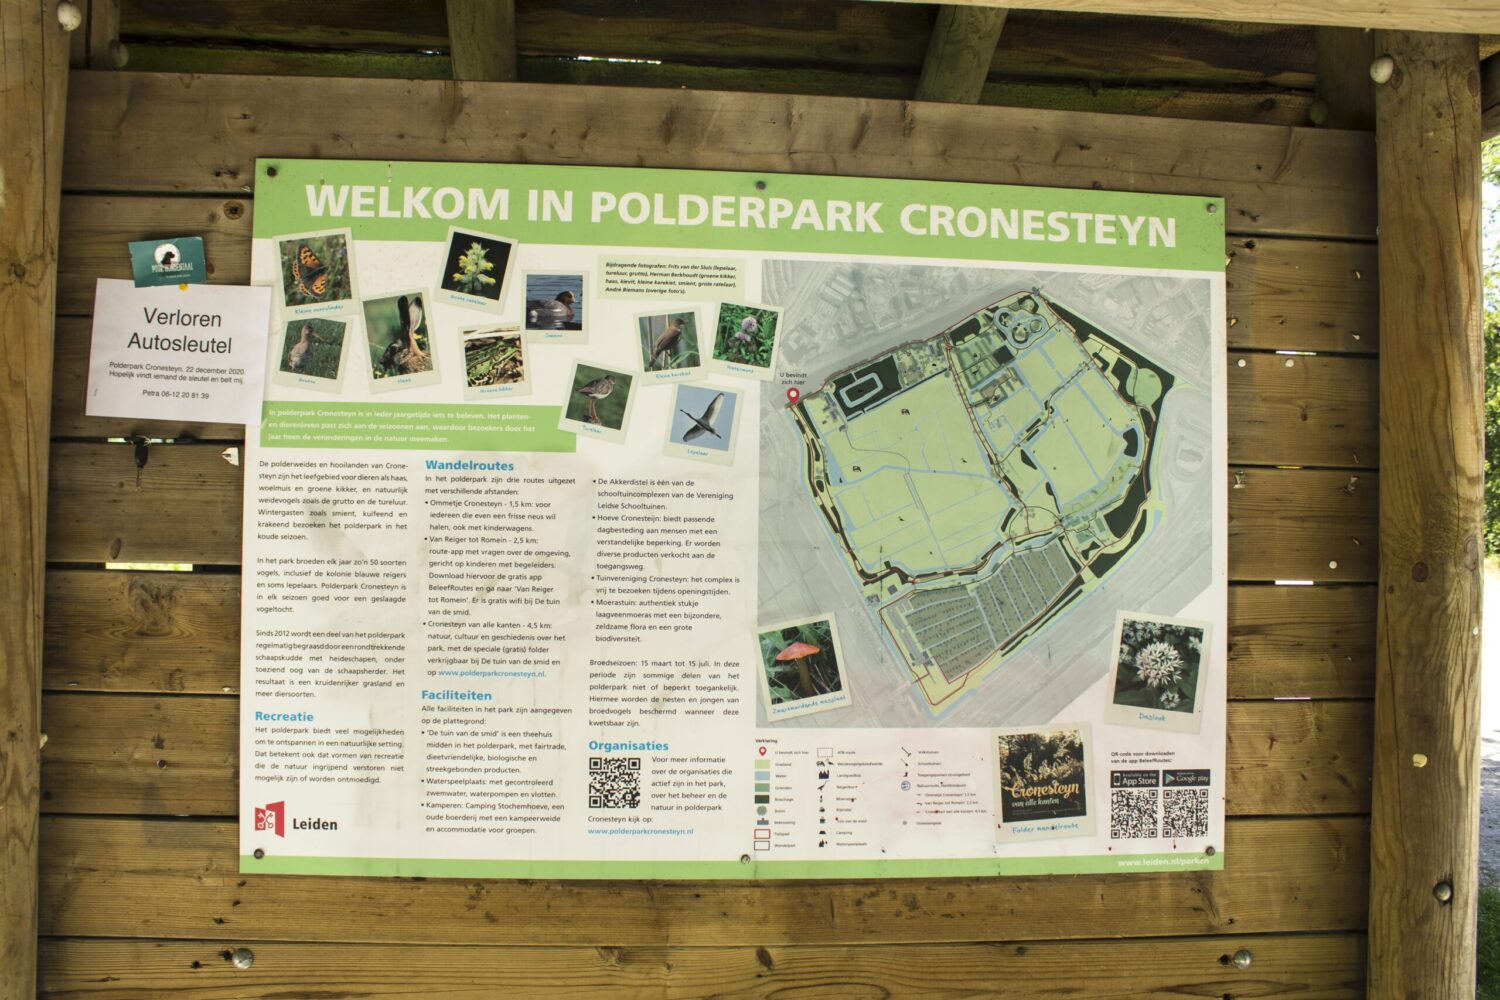 Polderpark Cronesteyn